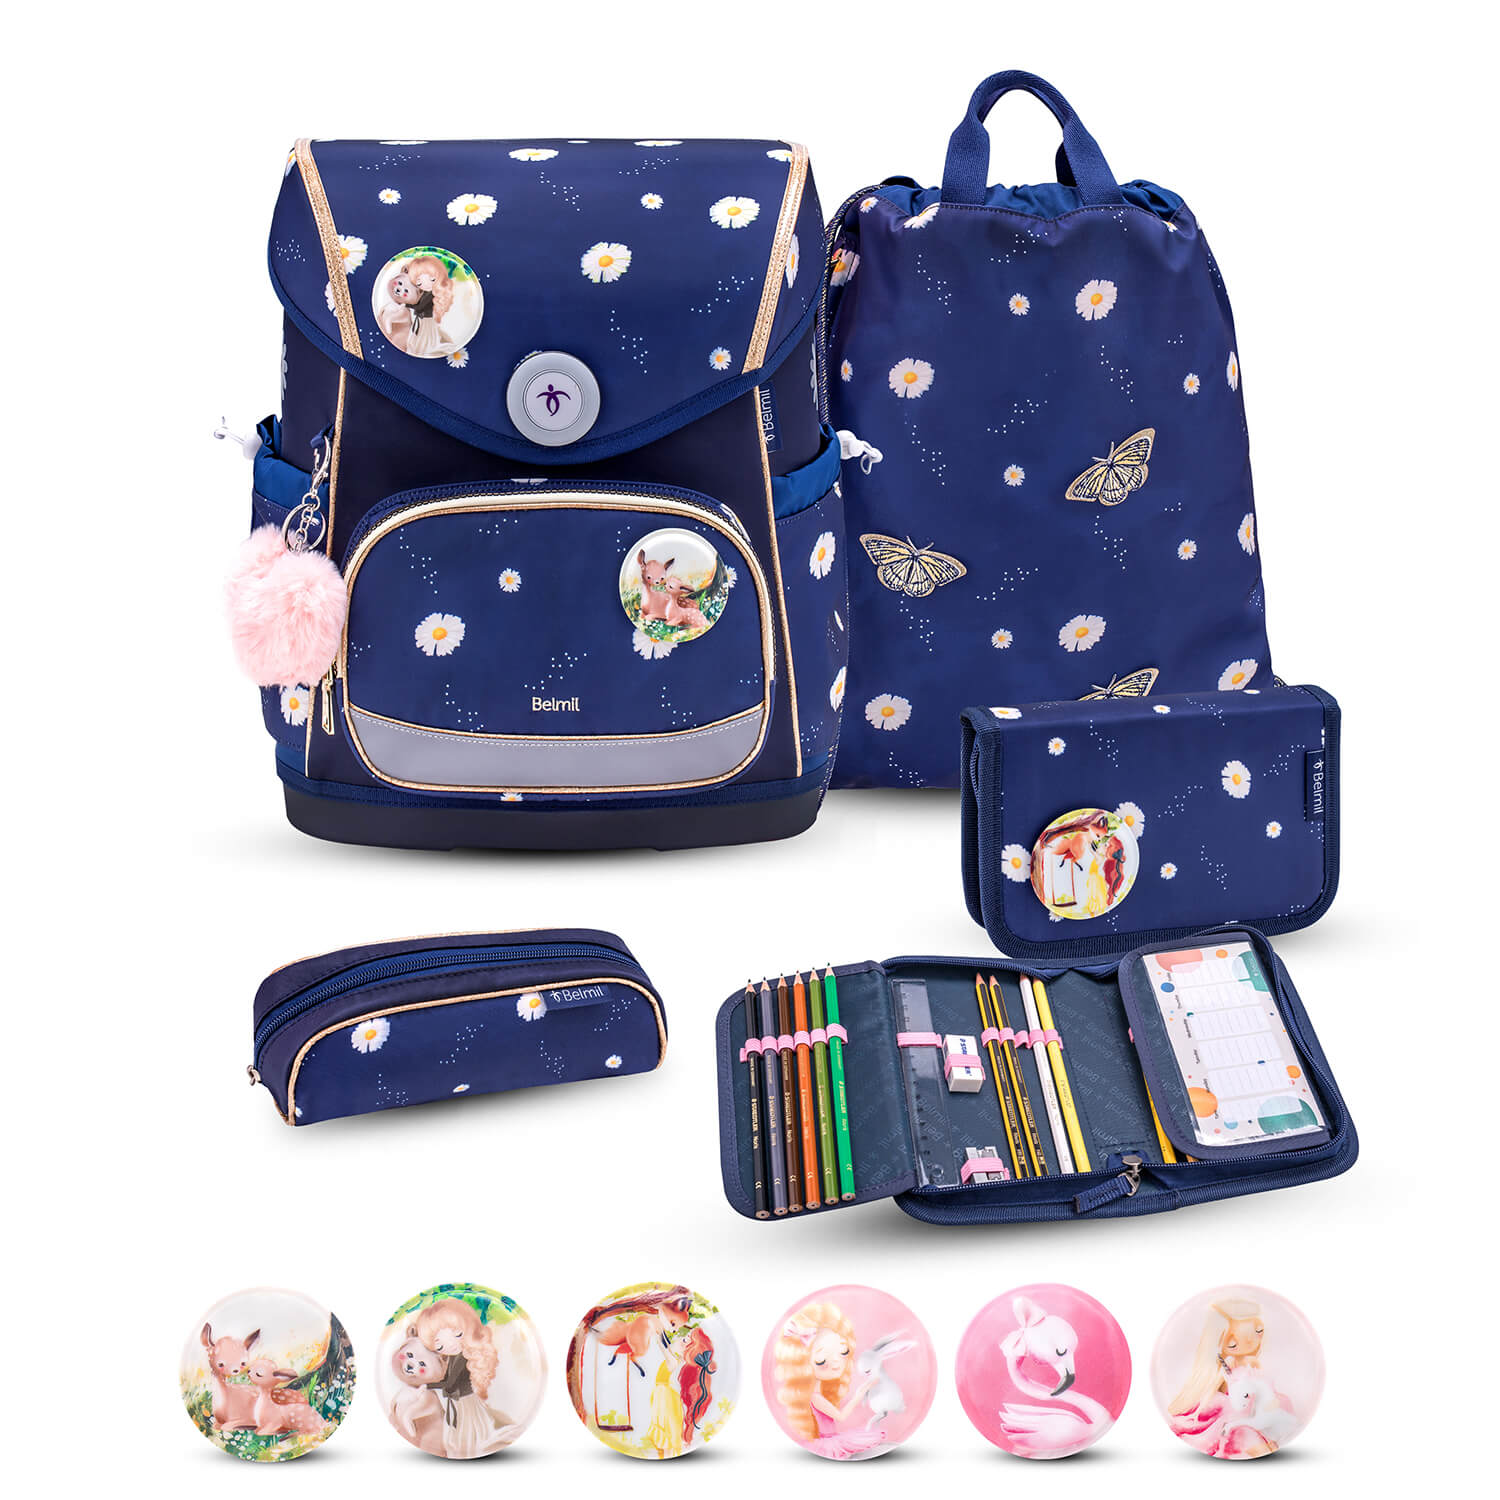 Premium Compact Plus Daisy Schoolbag set 5pcs.